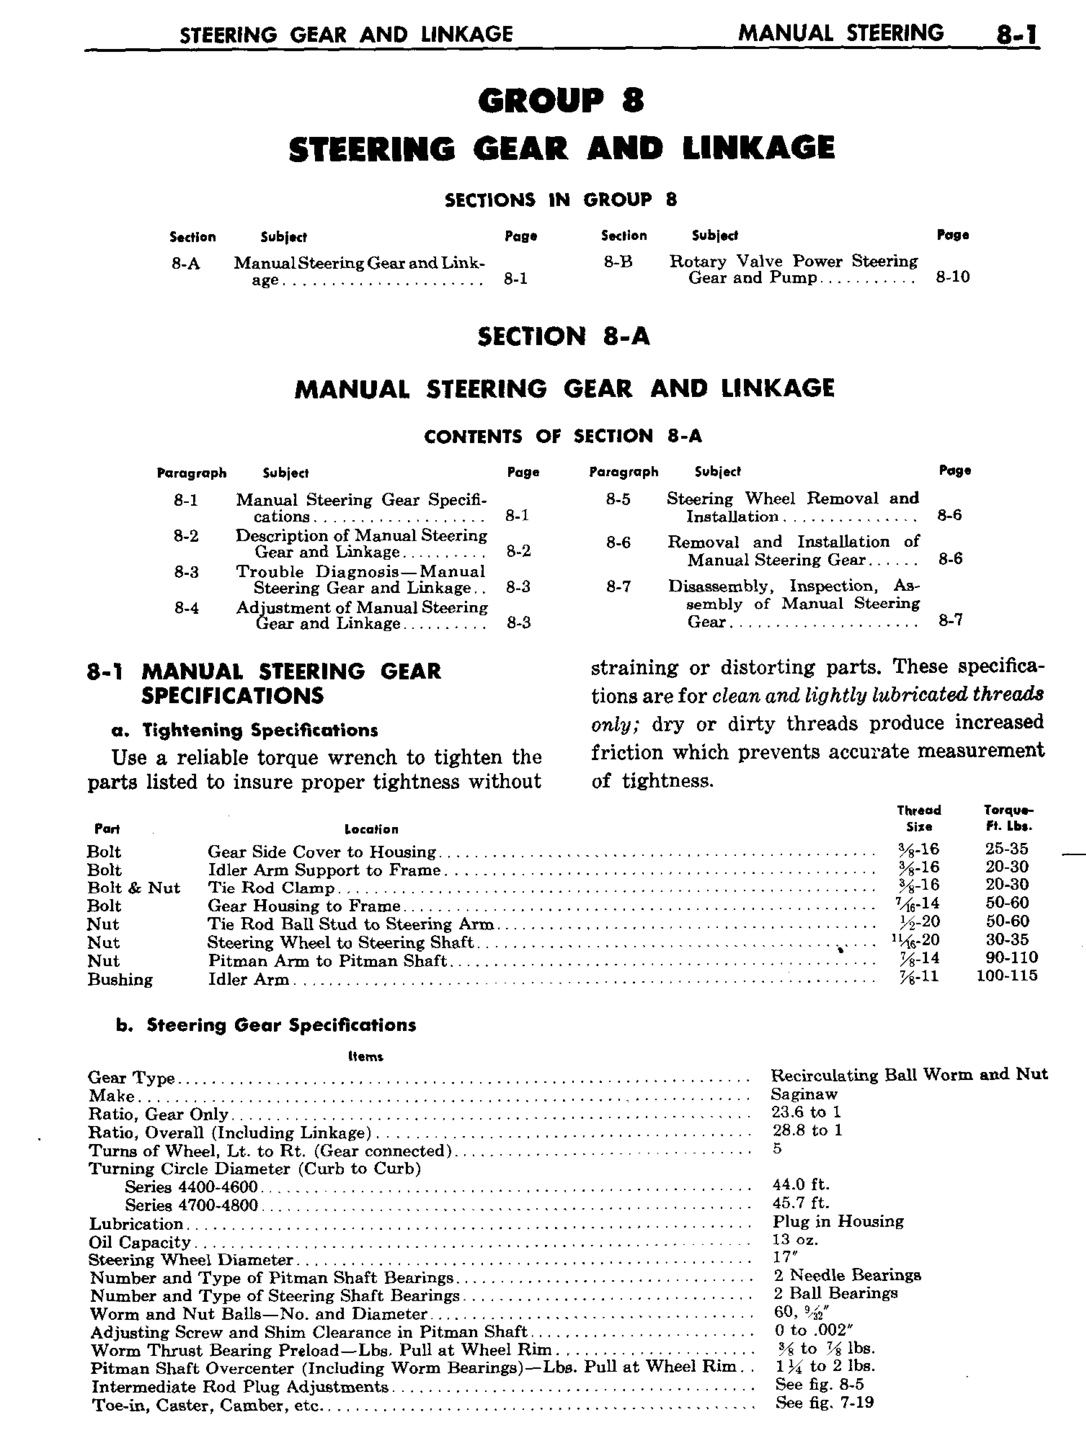 n_09 1959 Buick Shop Manual - Steering-001-001.jpg